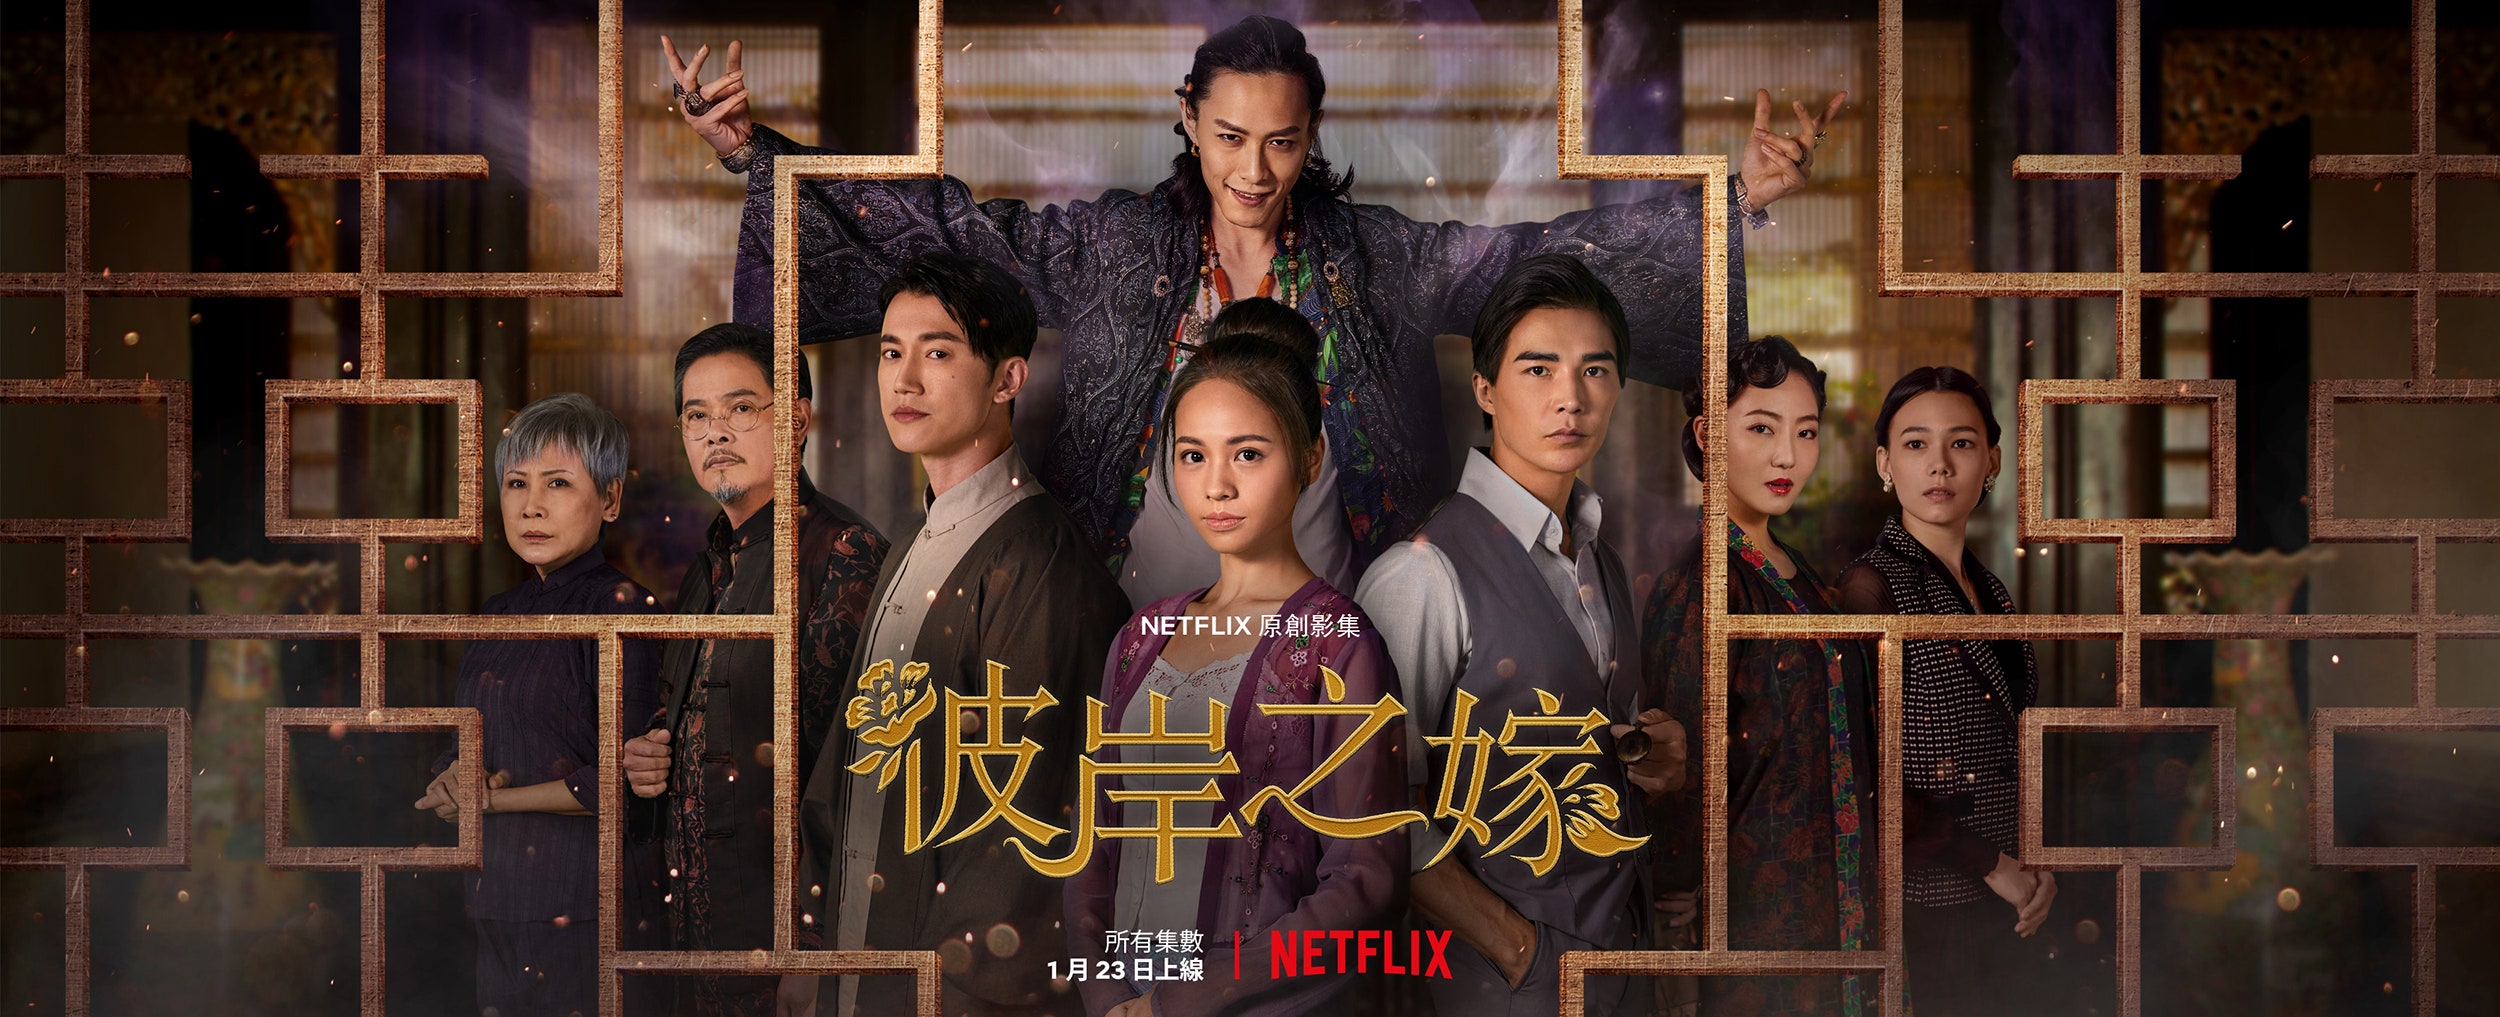 Latar belakang cerita "The Ghost Bride" mereproduksi budaya khas Tiongkok abad ke-19. Sumber: Diambil dari Netflix